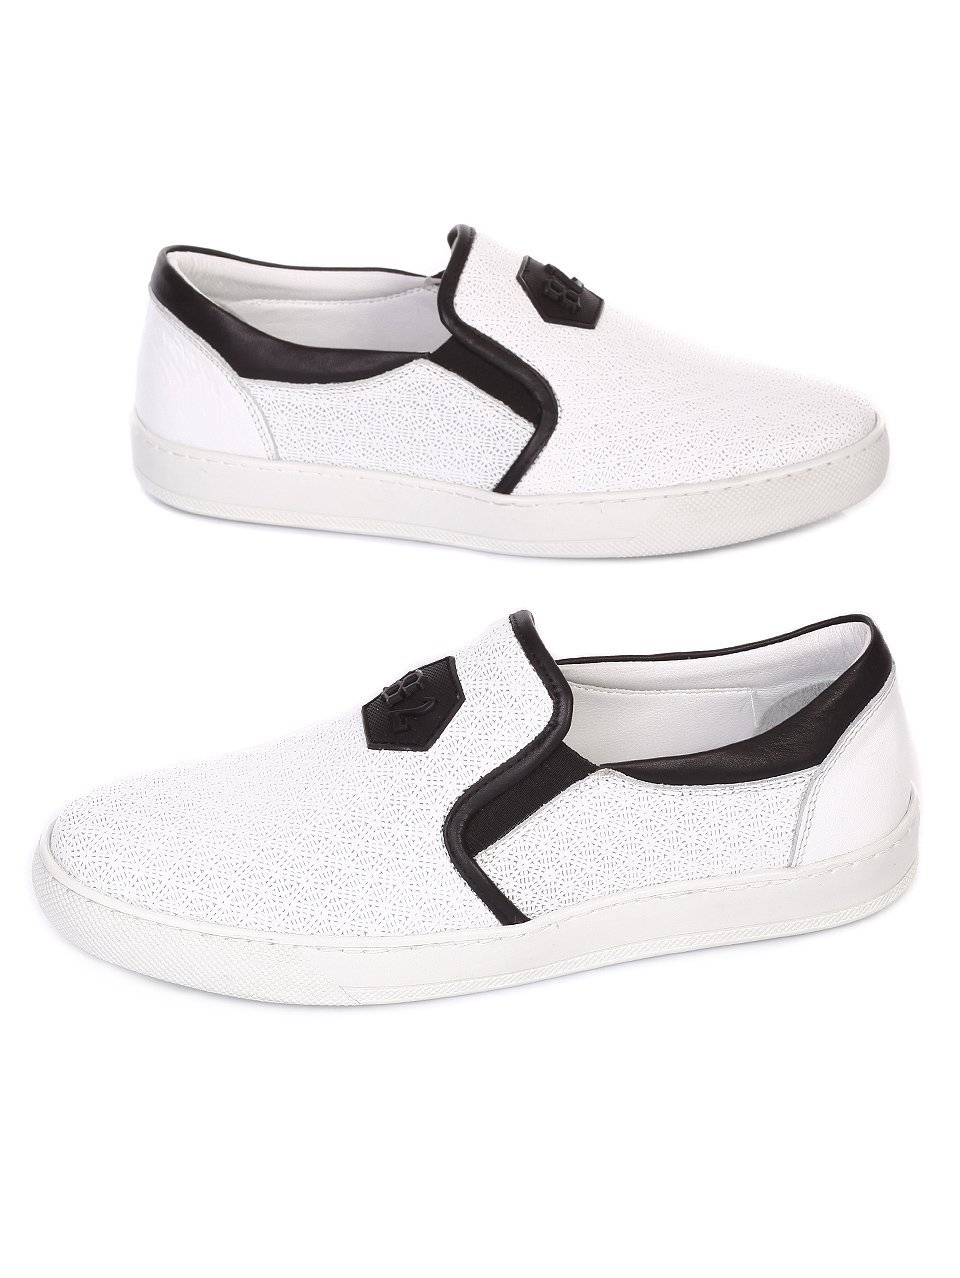 Ежедневни мъжки обувки от естествена кожа в бяло  8Y8198-4366 white